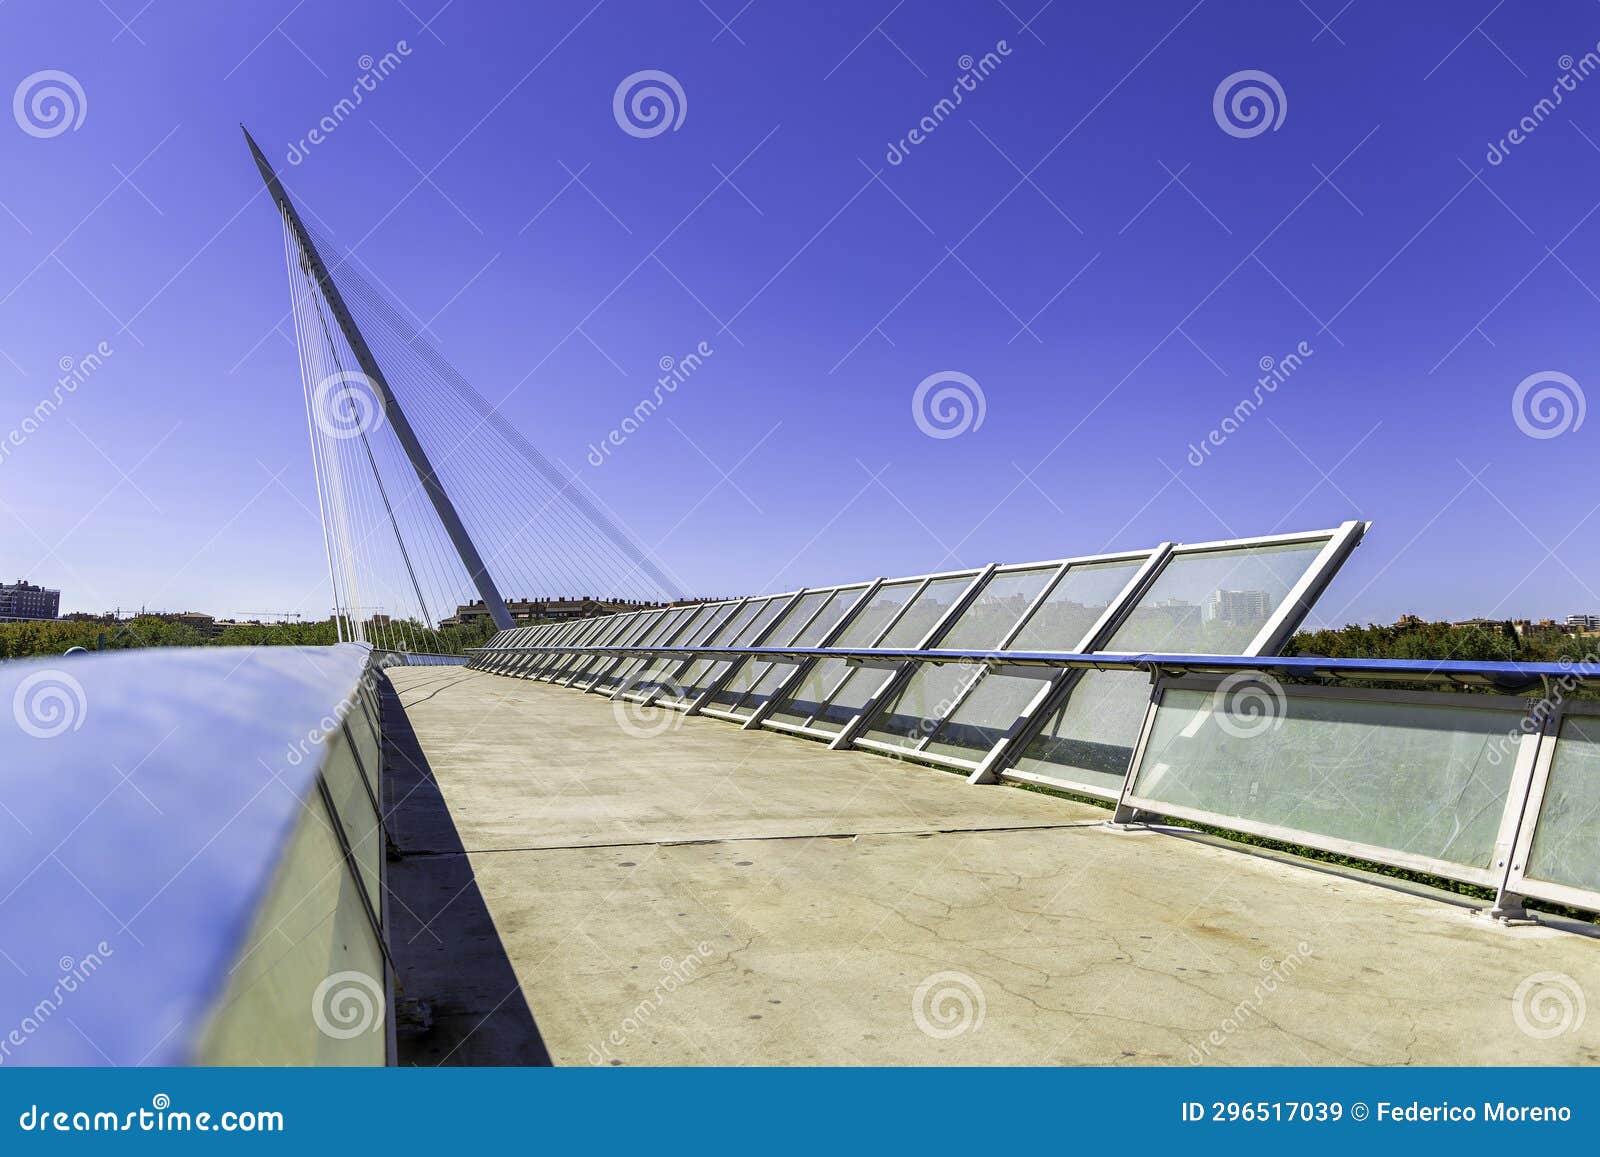 pasarela del voluntariado. modern bridge crossing the river ebro in zaragoza. modern architecture